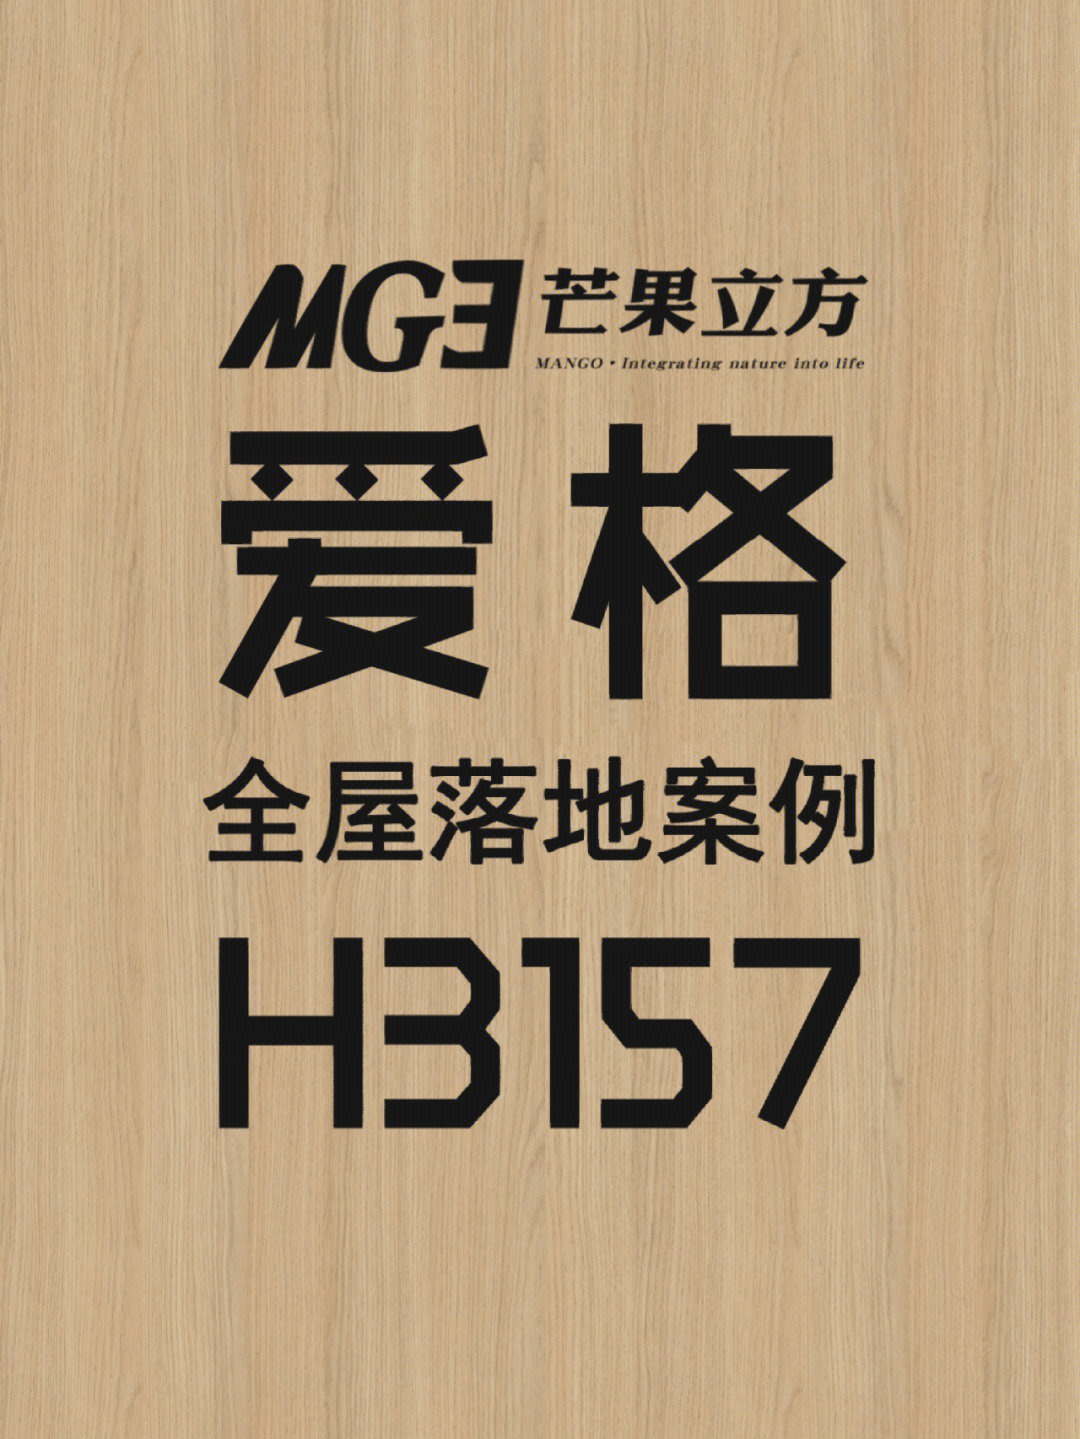 芒果立方案例:杭州柜体:爱格w980(logo款)柜门